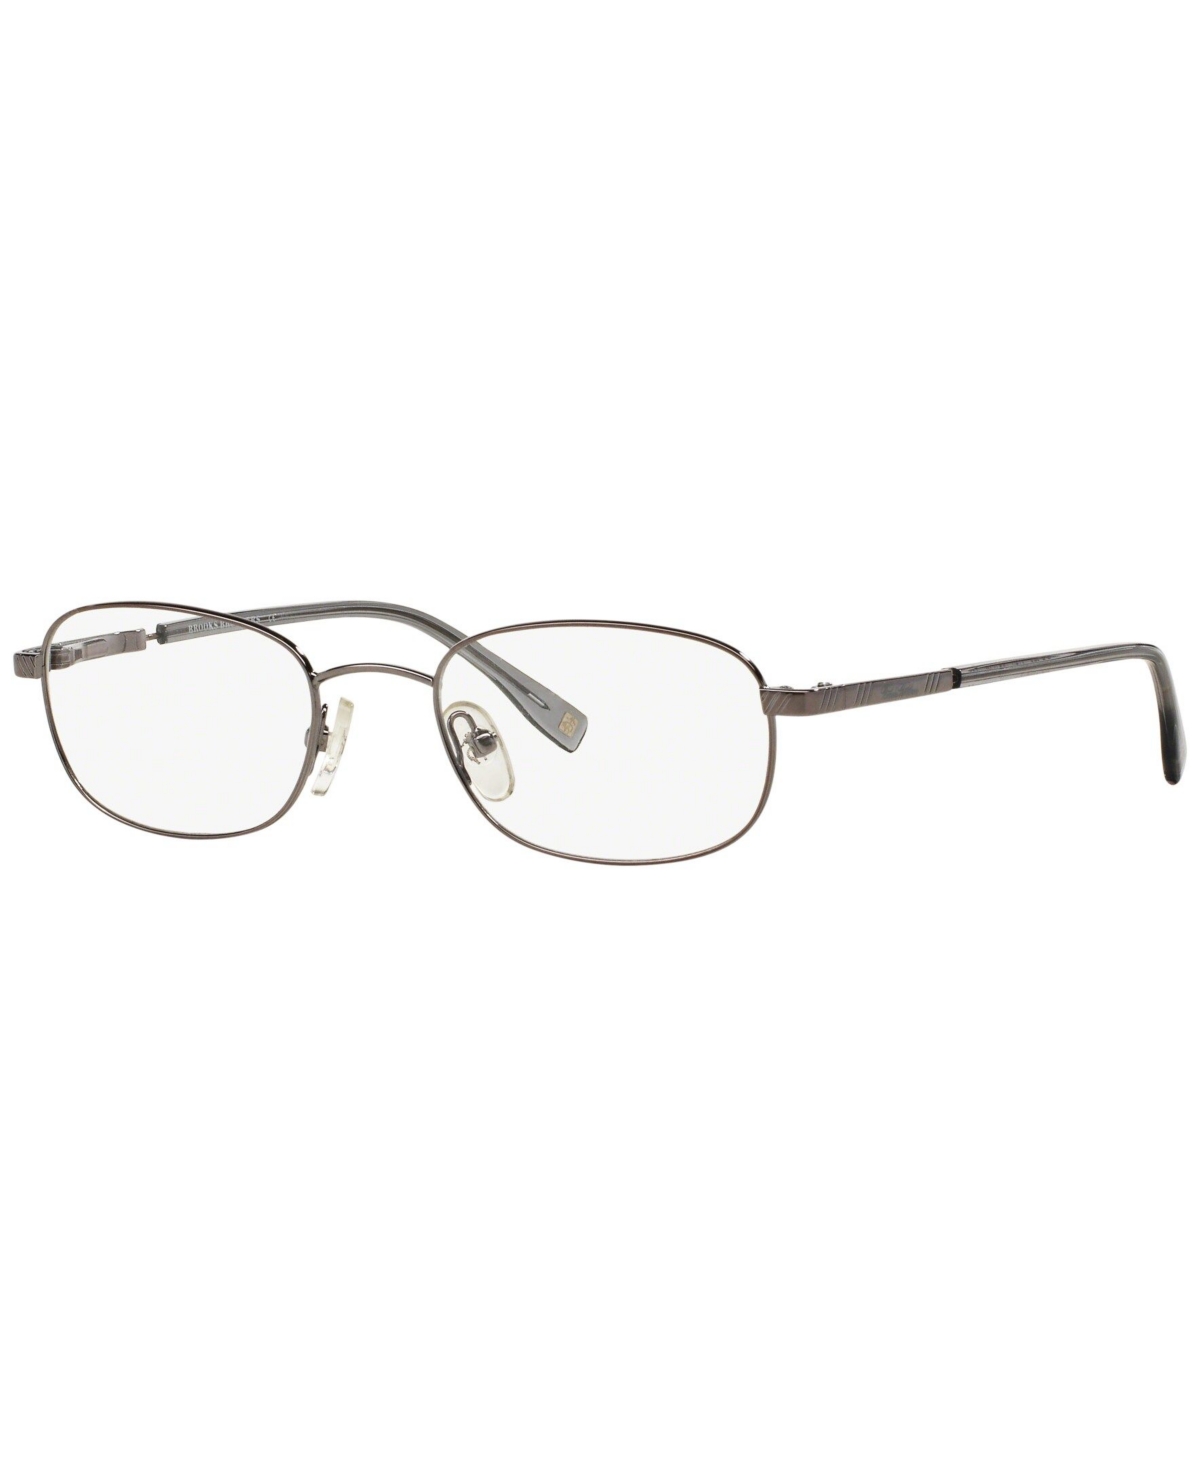 Bb 363 Men's Oval Eyeglasses - Gunmetal